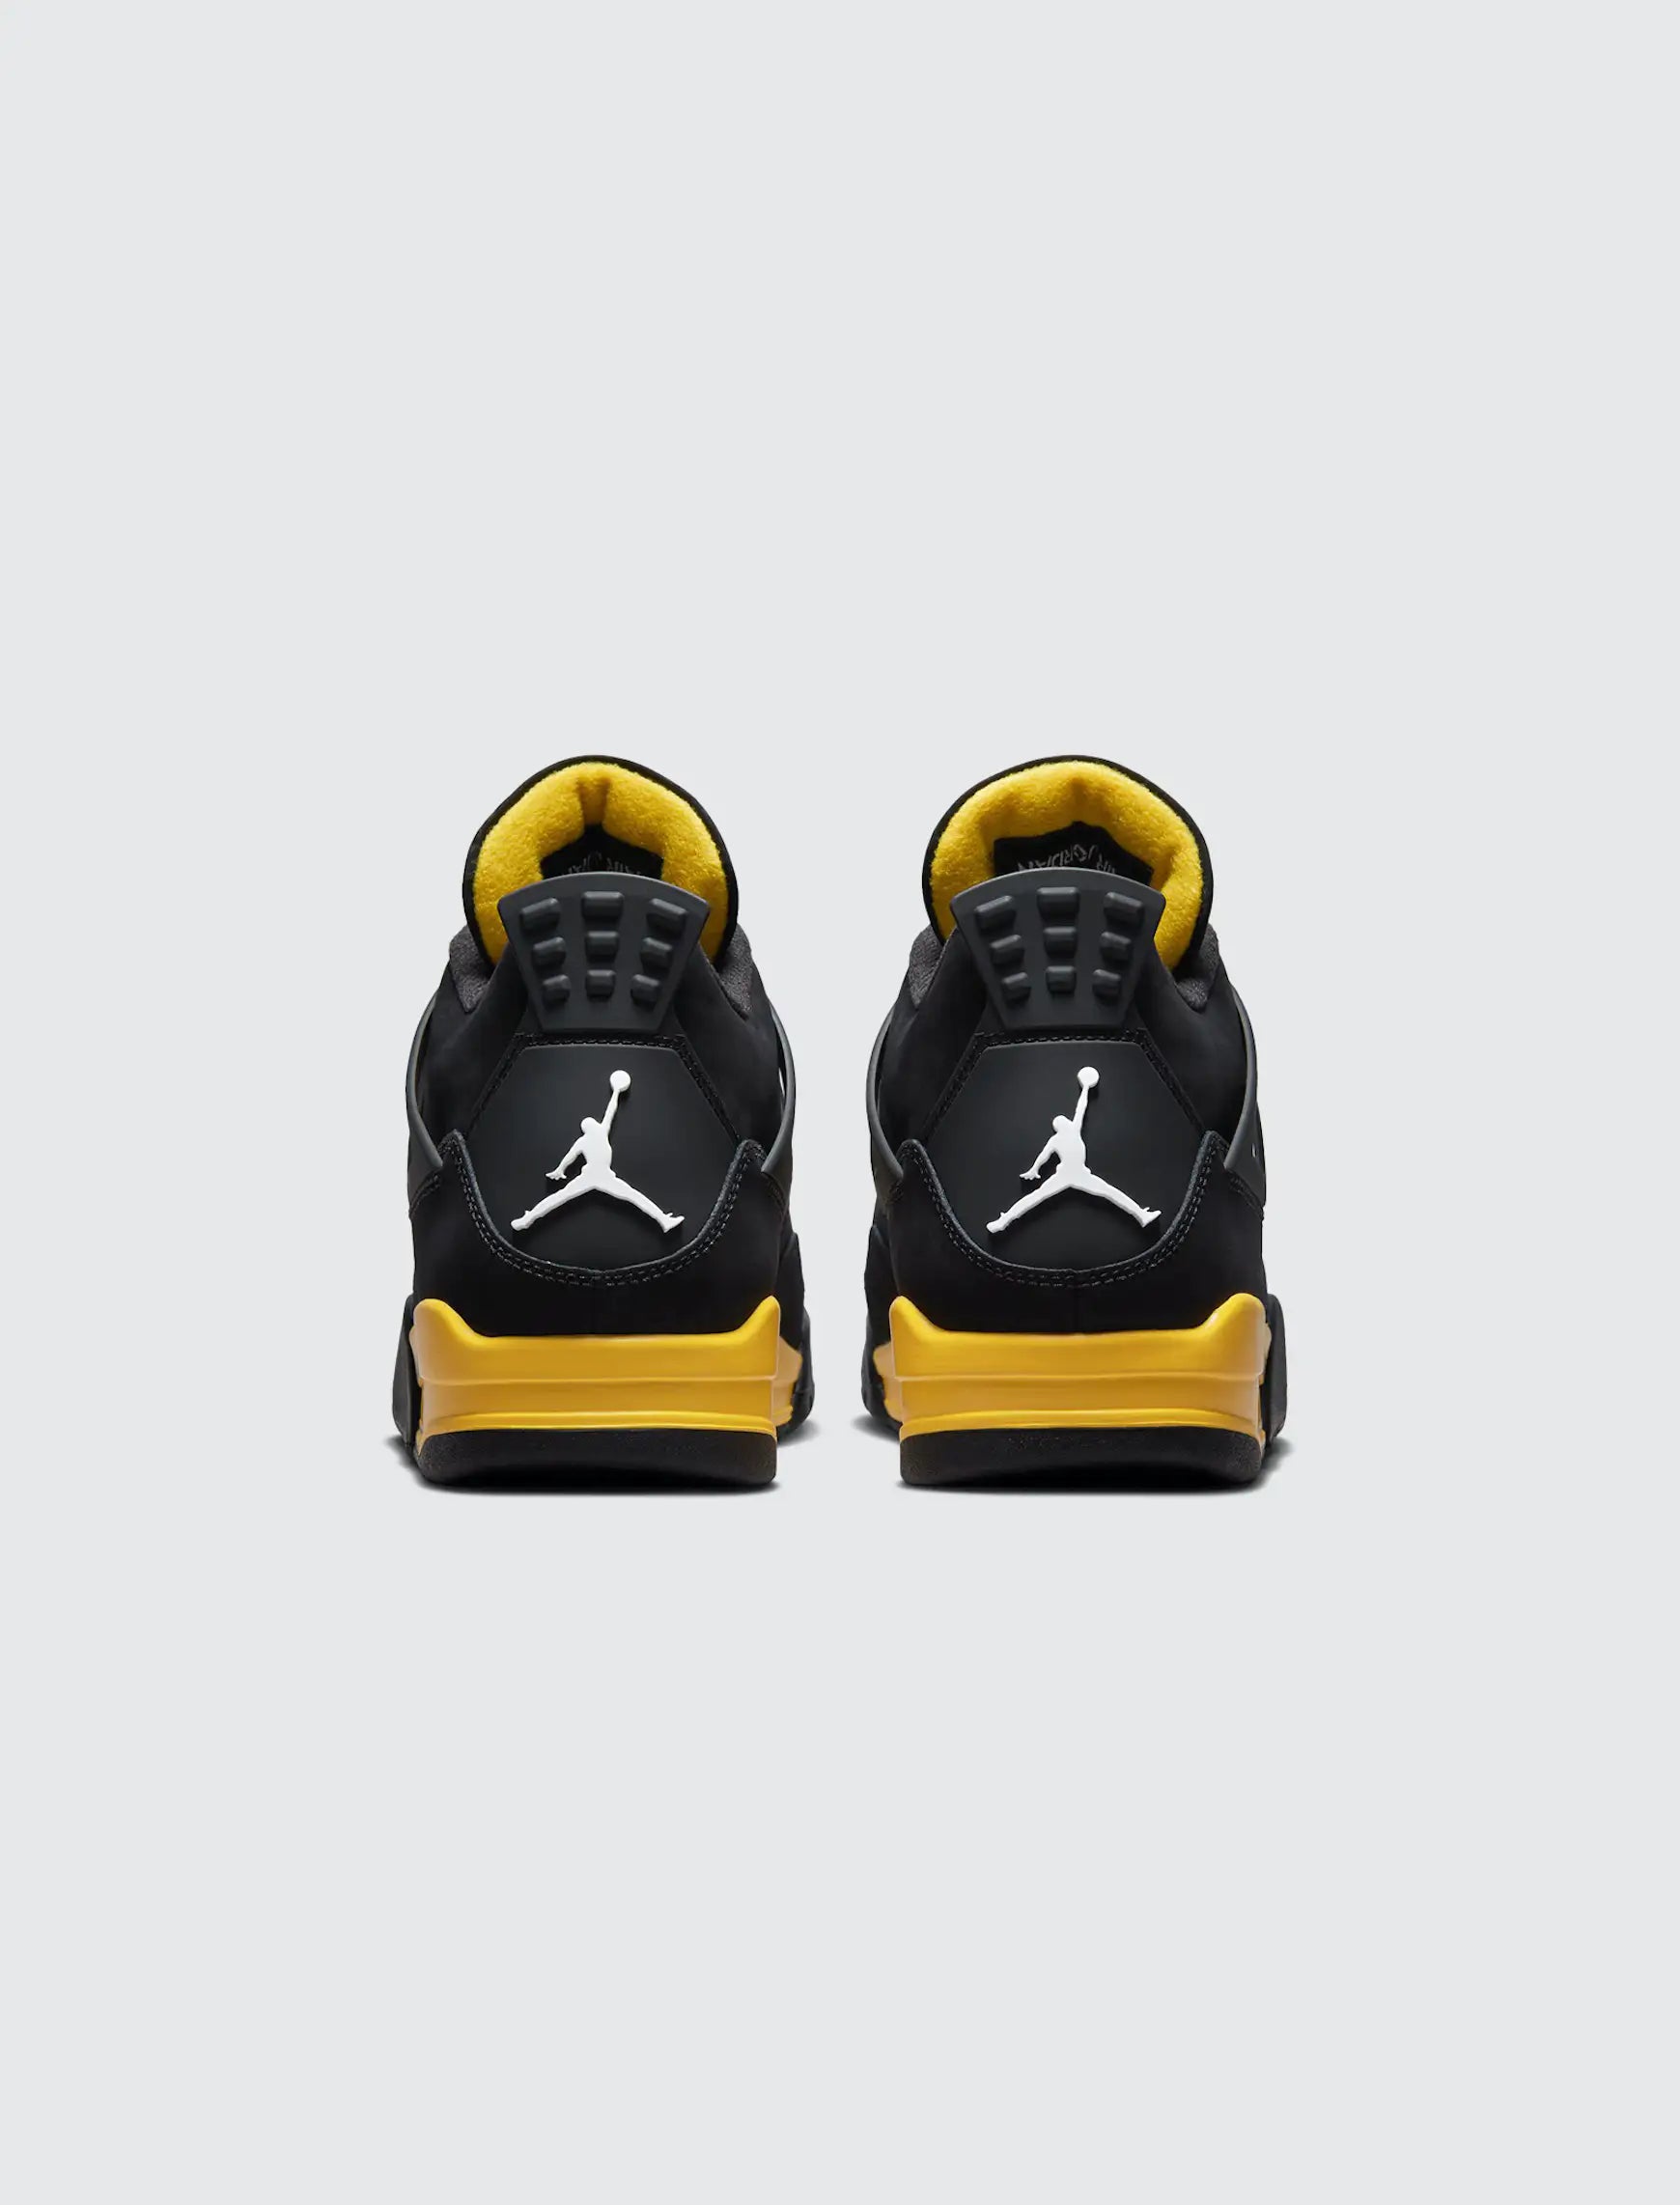 The Air Jordan 4 “Thunder”